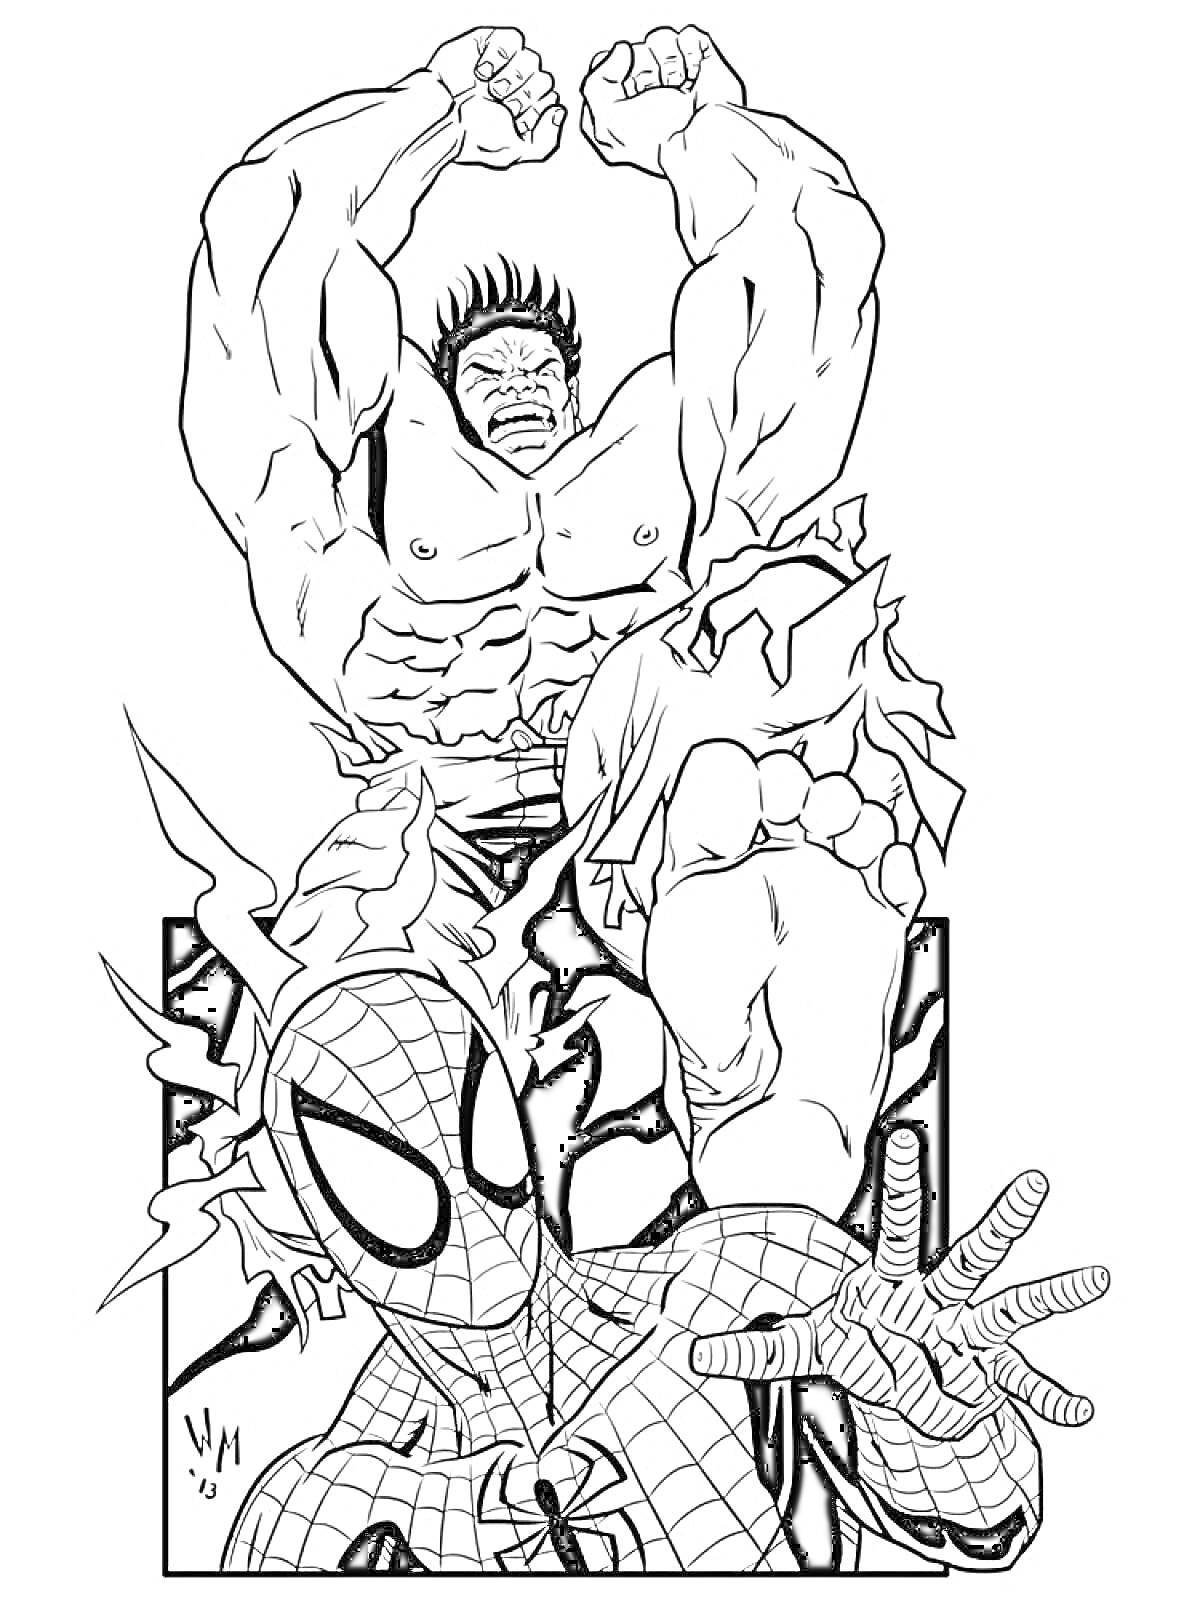 Раскраска Халк и Человек-паук, Халк сжат кулаки, Человек-паук в характерной позе с паутиной